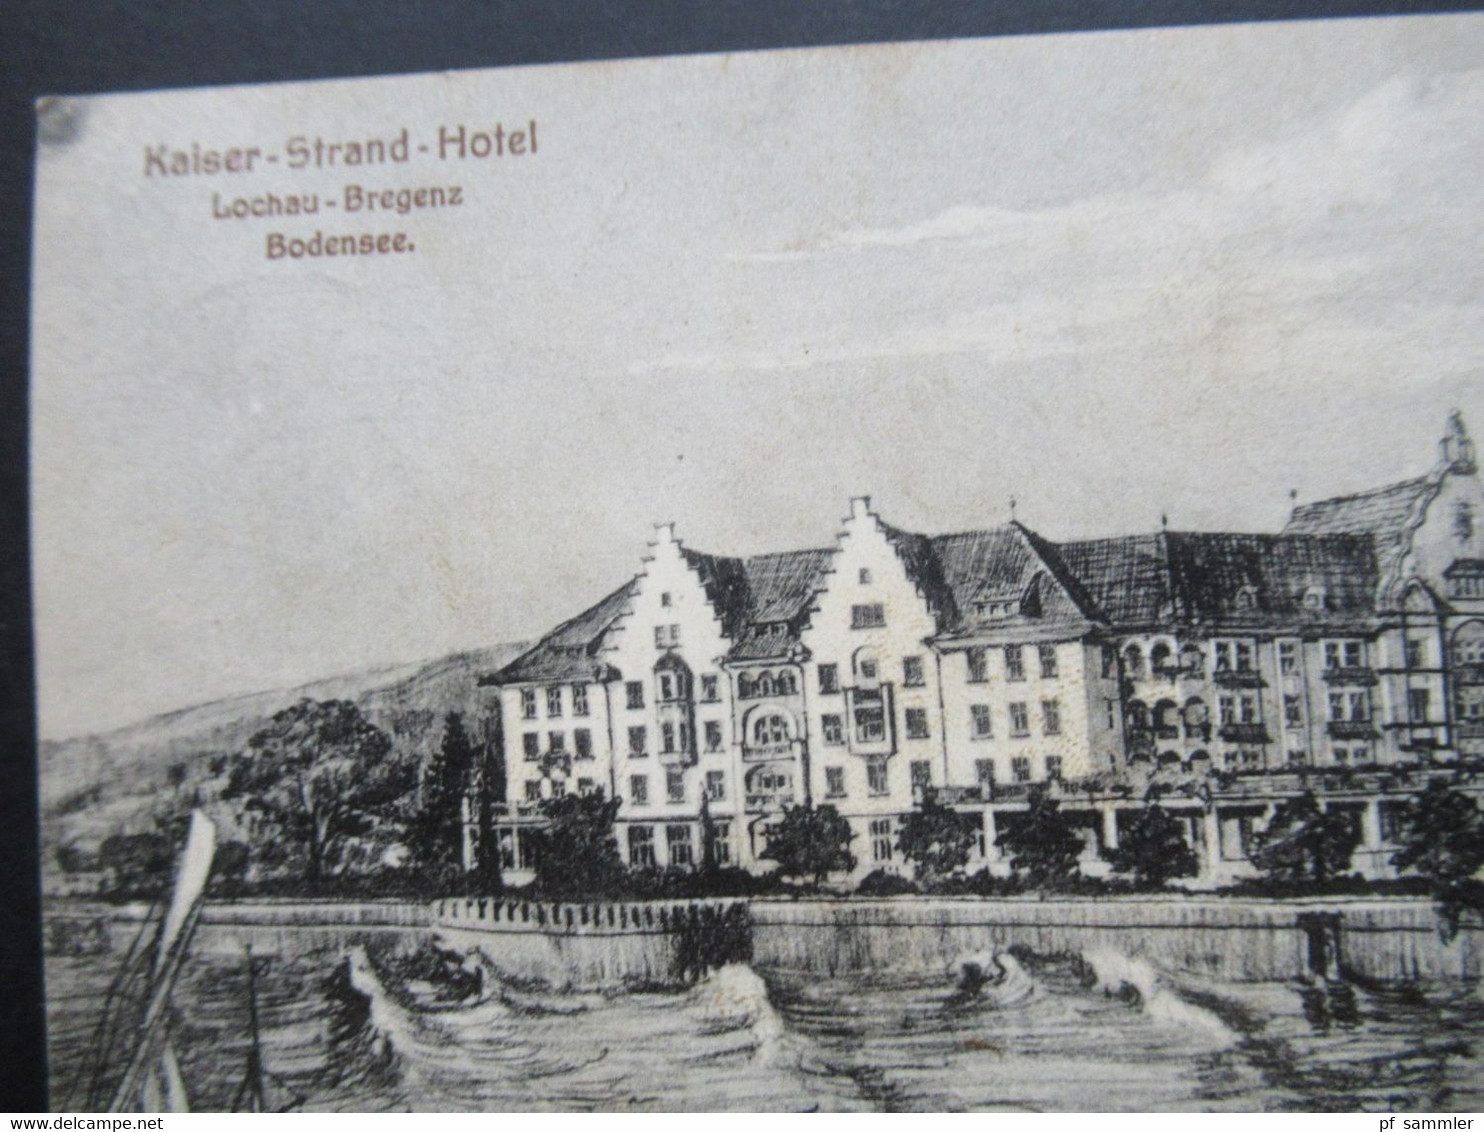 Österreich 1909 AK Kaiser Strand Hotel In Lochau Bregenz Am Bodensee. Strandhotel Mit Promenade - Hotels & Gaststätten